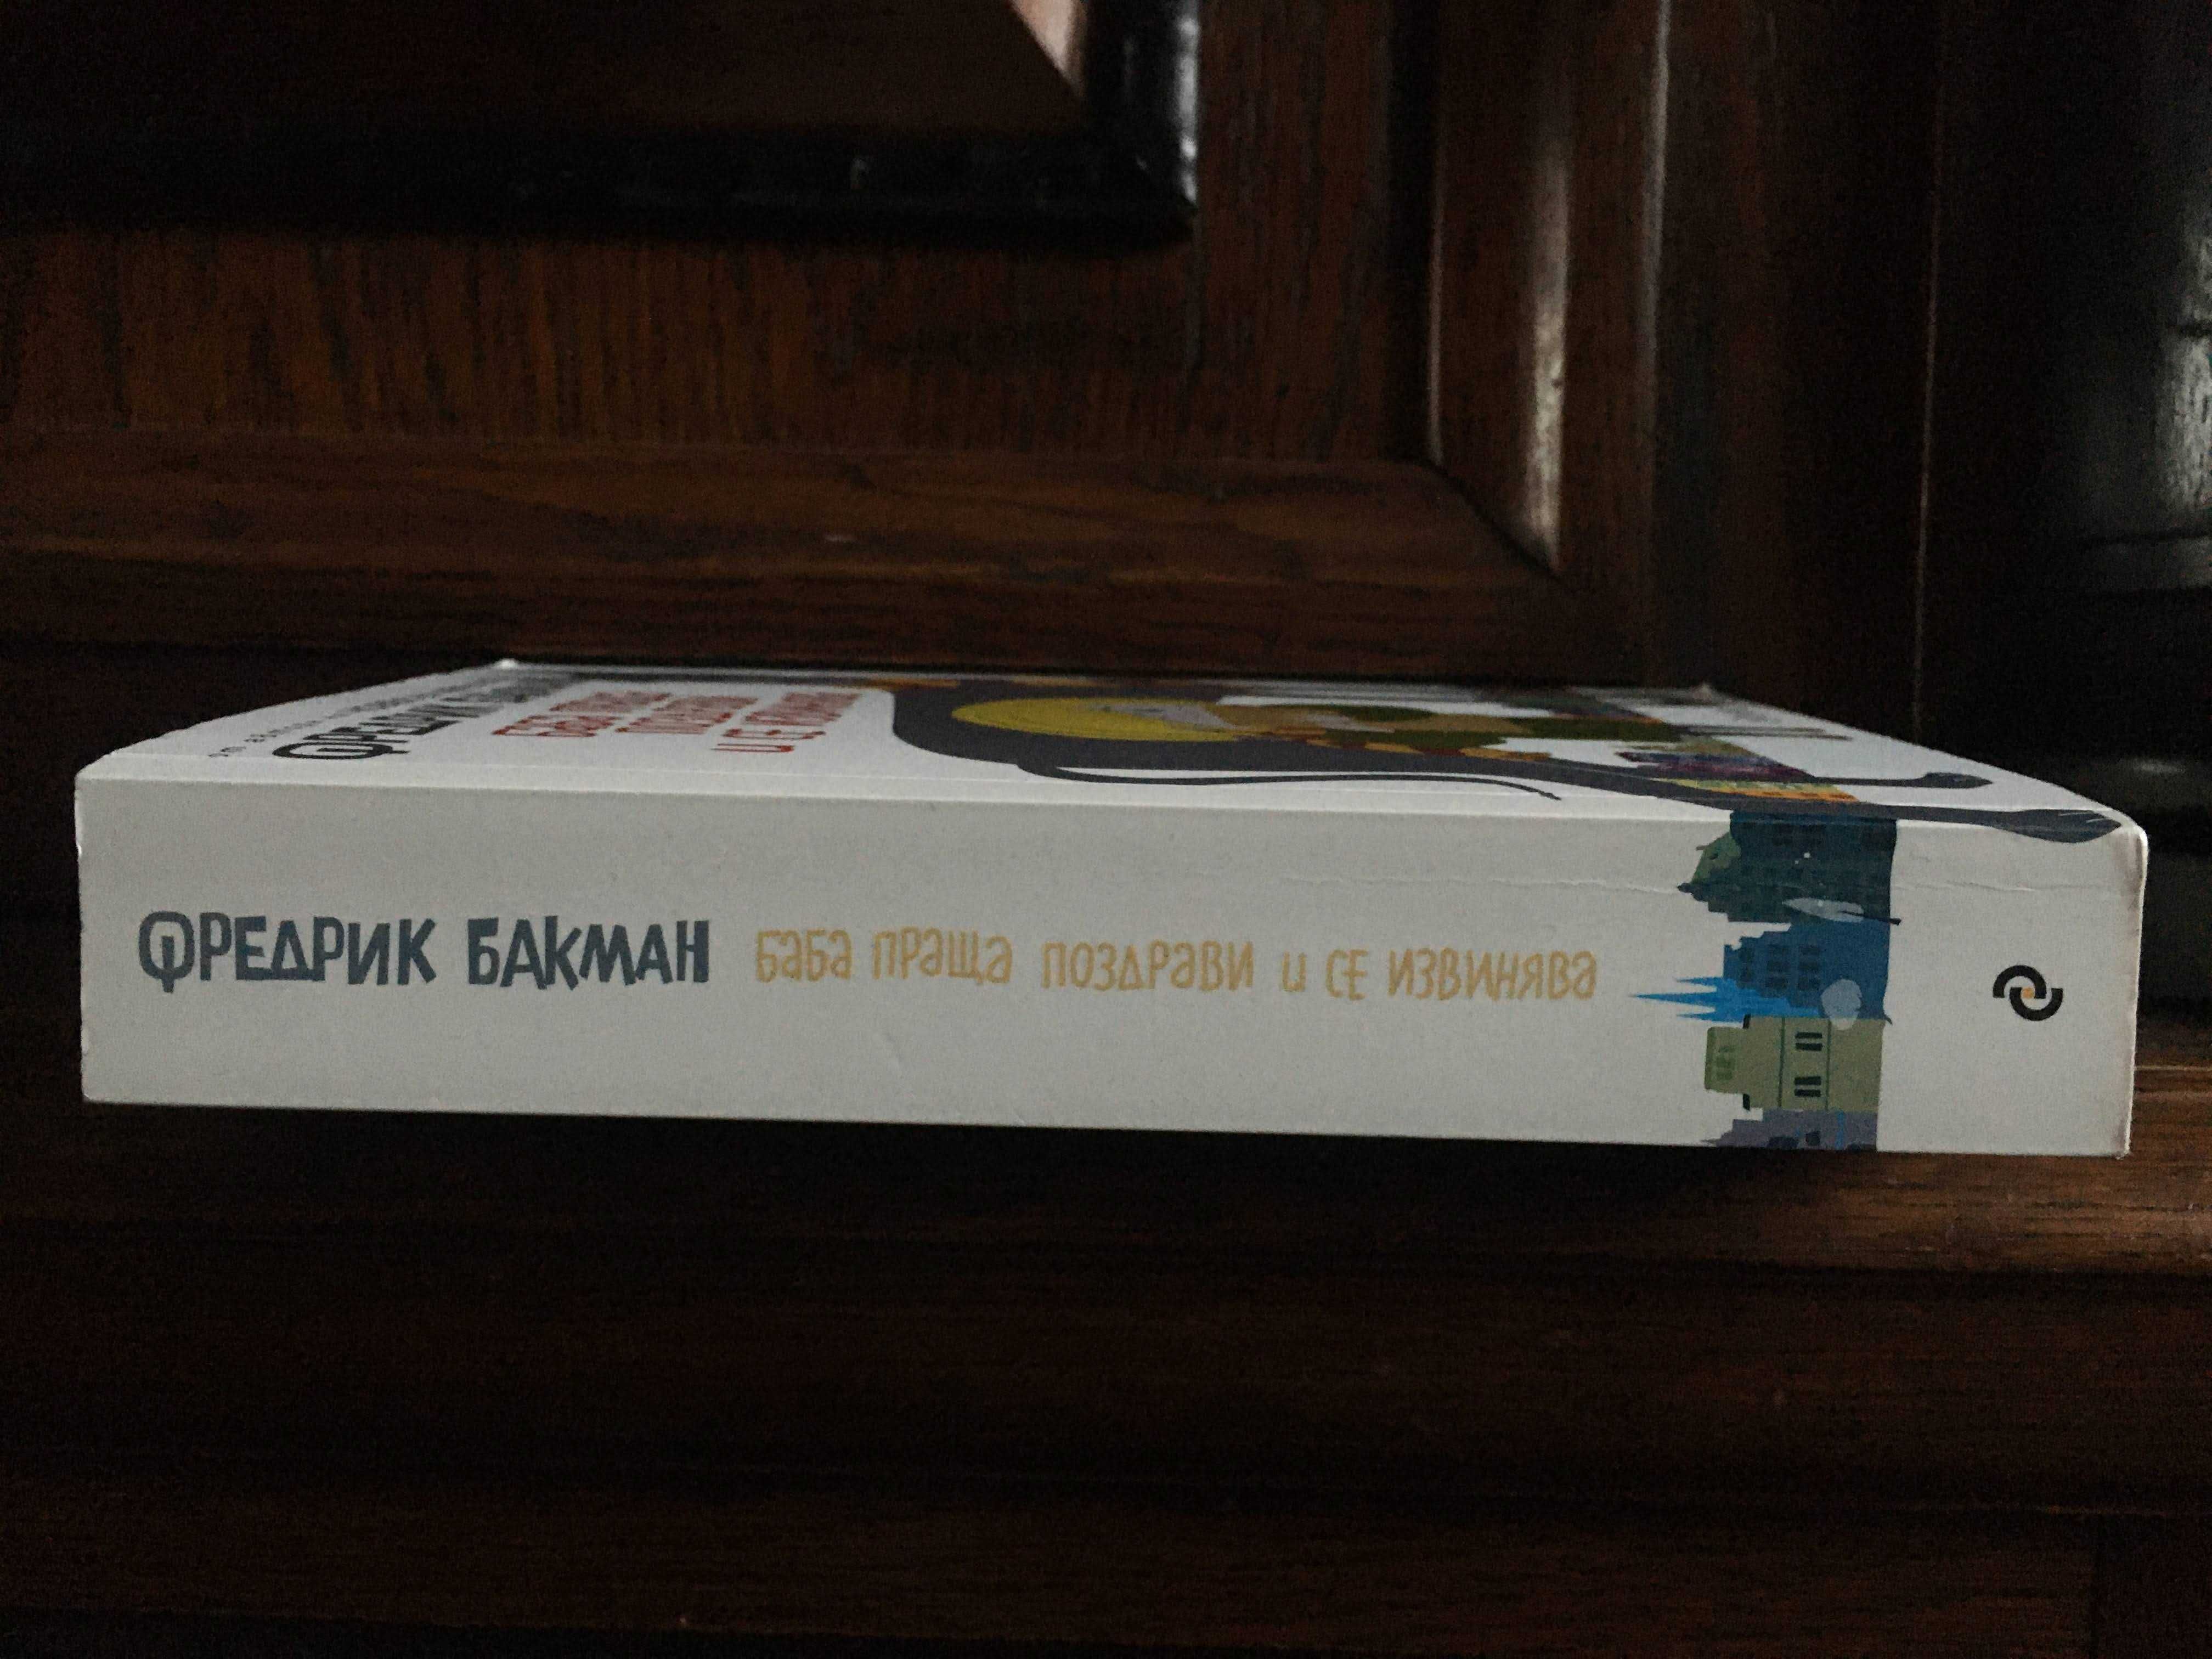 Книга - "Баба праща поздрави и се извинява" от Фредрик Бакман